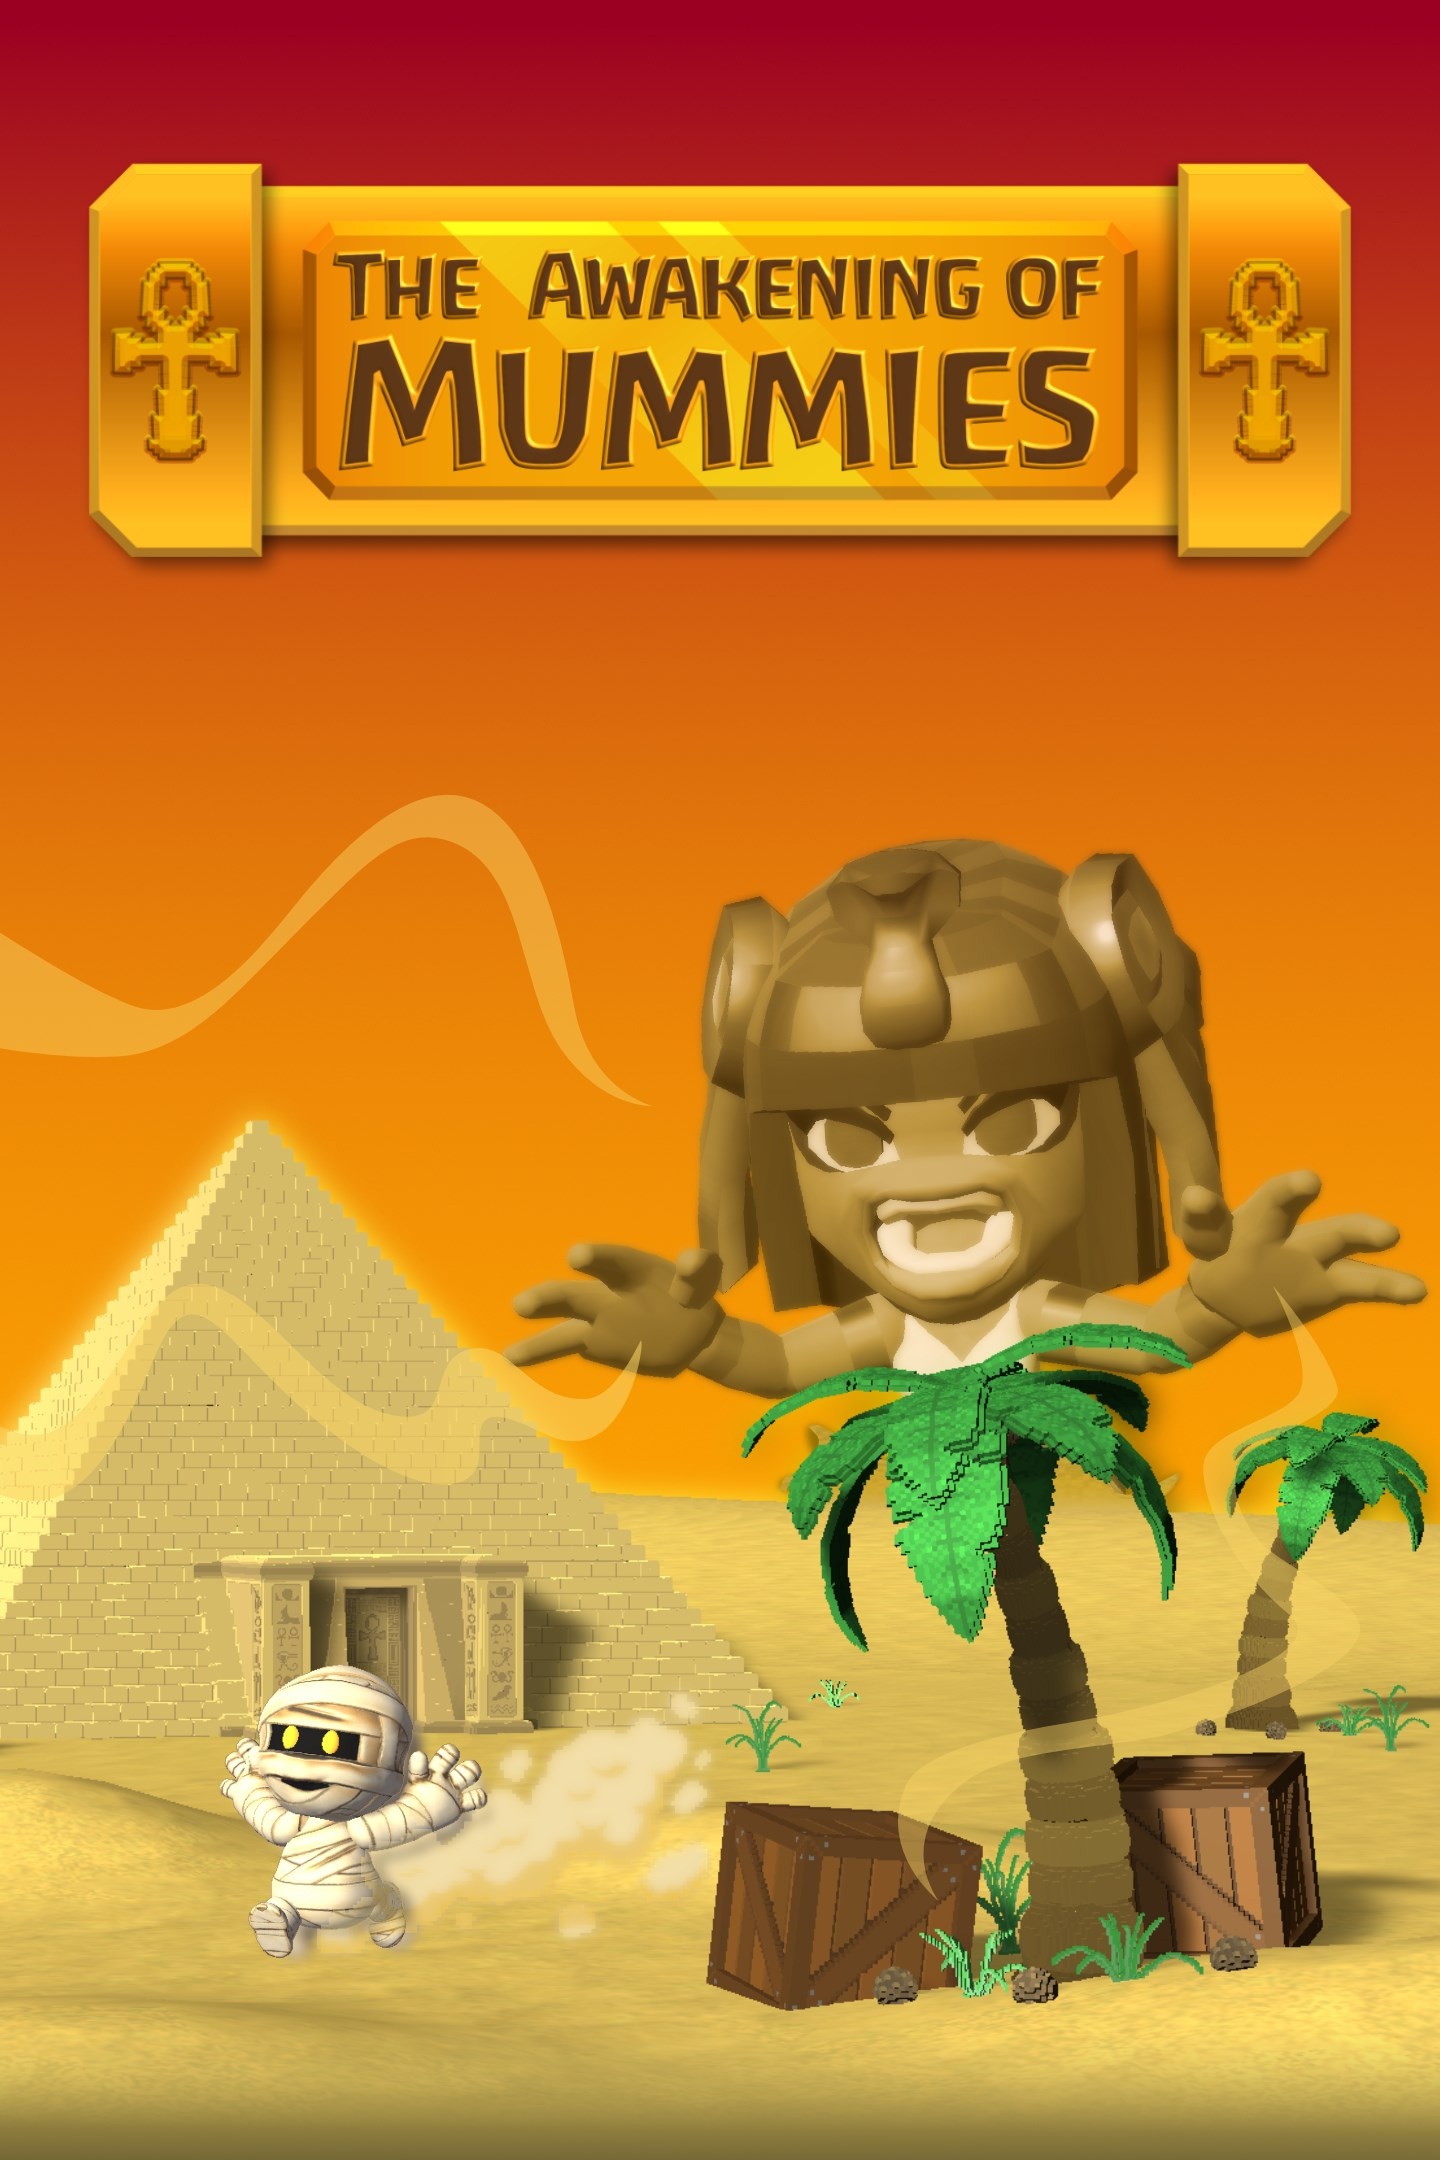 Next Week on Xbox: Neue Spiele vom 14. bis zum 18. November: The Awakening of Mummies